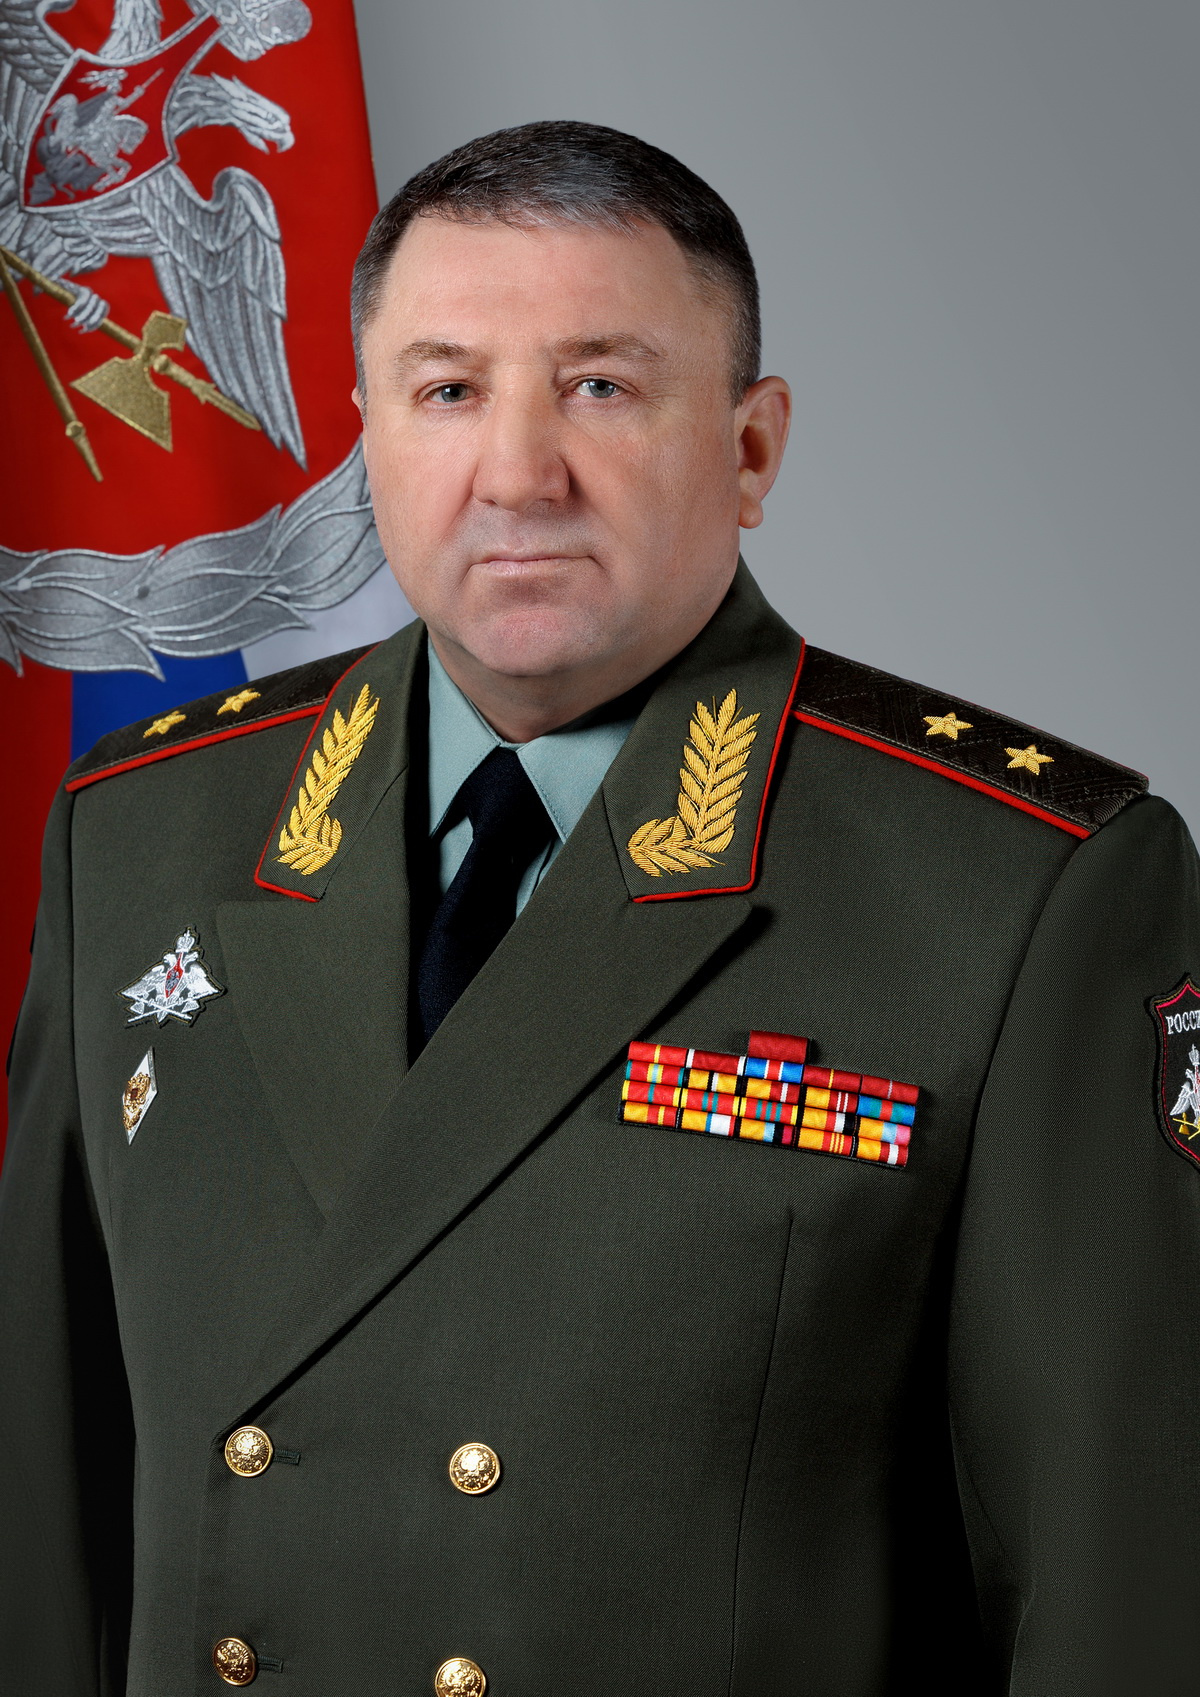 Булыга Андрей Михайлович<br />Заместитель министра обороны <br /><br />Родился в Казахстане, 56 лет. Окончил Ульяновское высшее военно-техническое училище, военные Академии тыла и транспорта, Генштаба.<br /><br />Генерал-лейтенант.